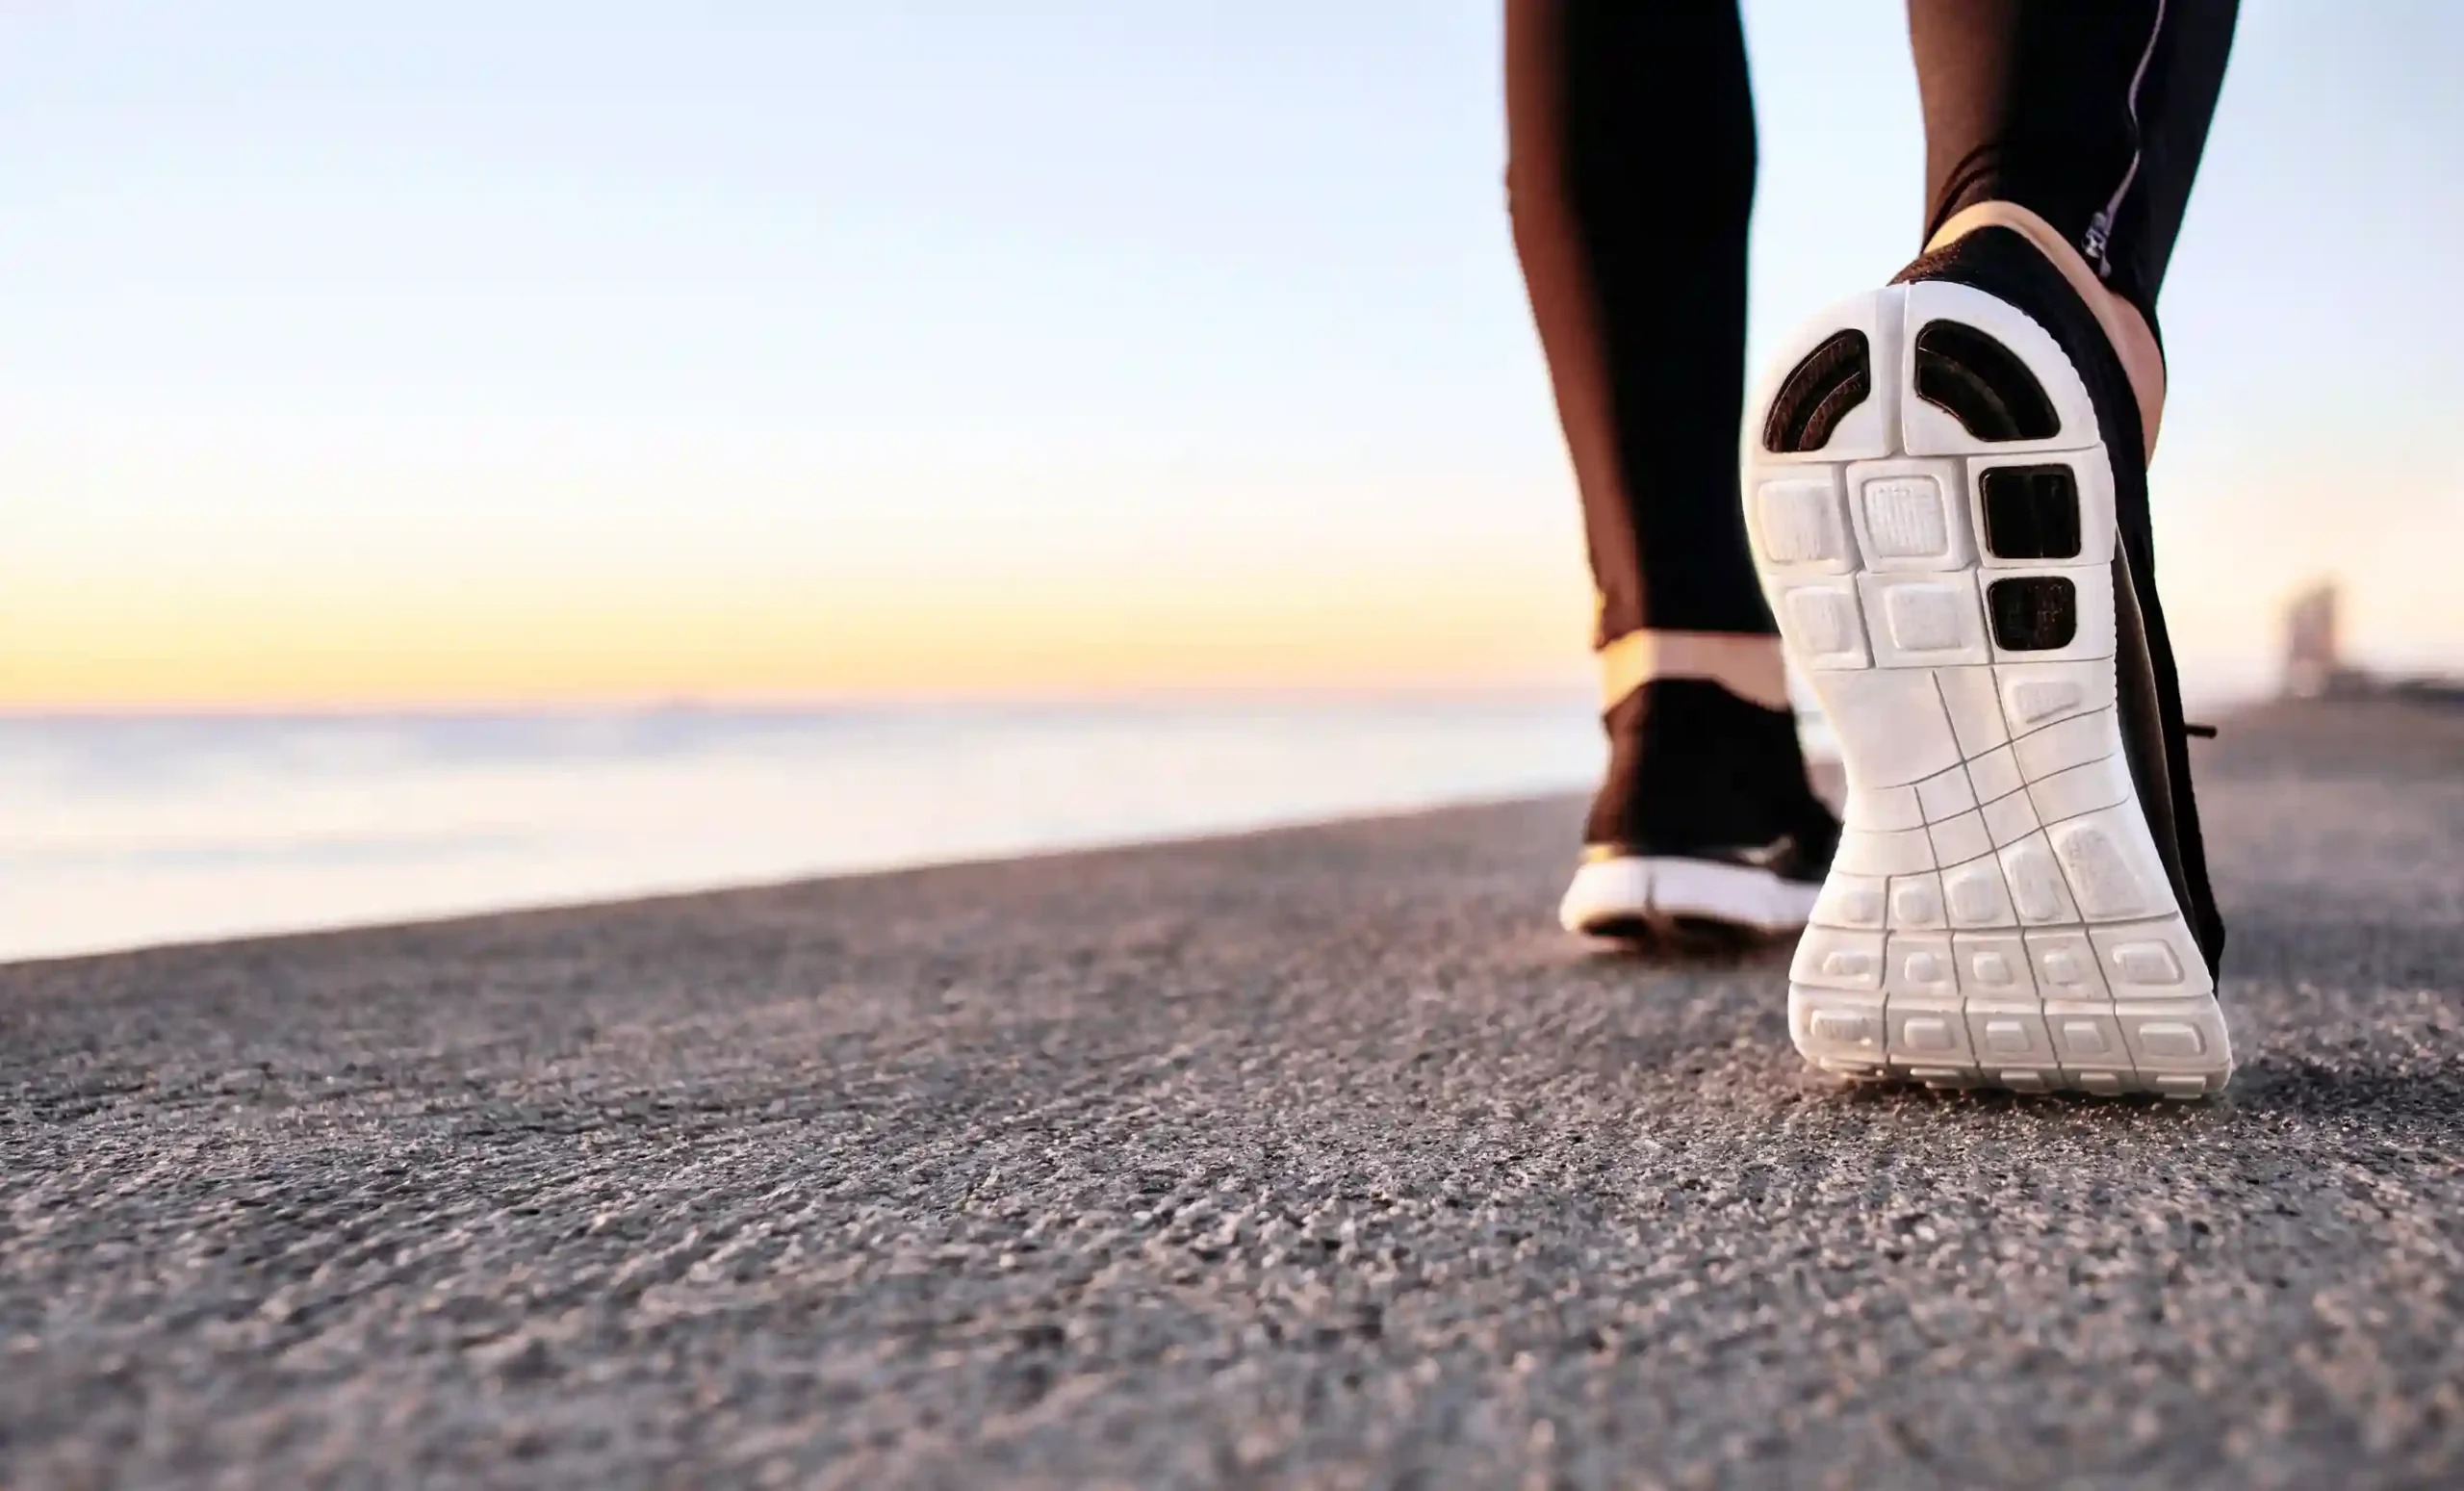 برای دیدن فواید سلامتی باید 30 دقیقه به طور مداوم پیاده روی کنید